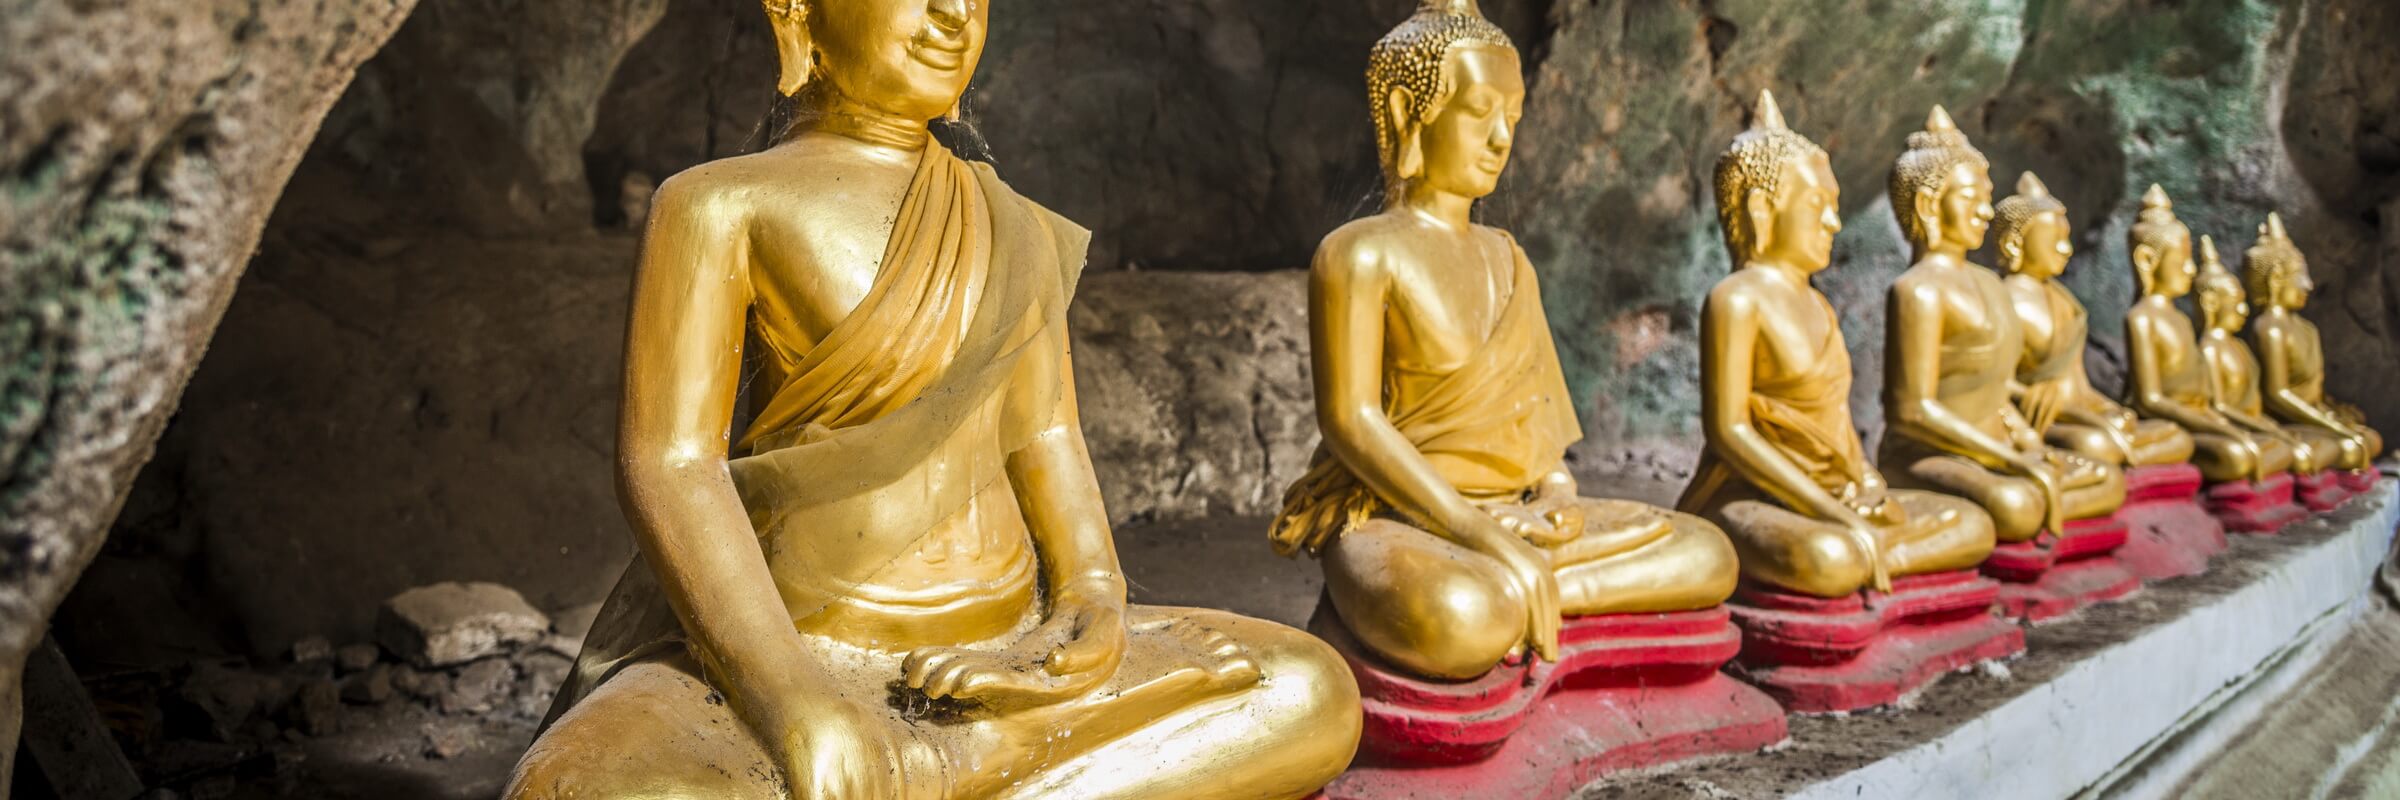 In den Pak Ou Höhlen befinden sich unzählige Buddha-Statuen, die dort über Jahre hinweg von Gläubigen dorthin gebracht wurden.